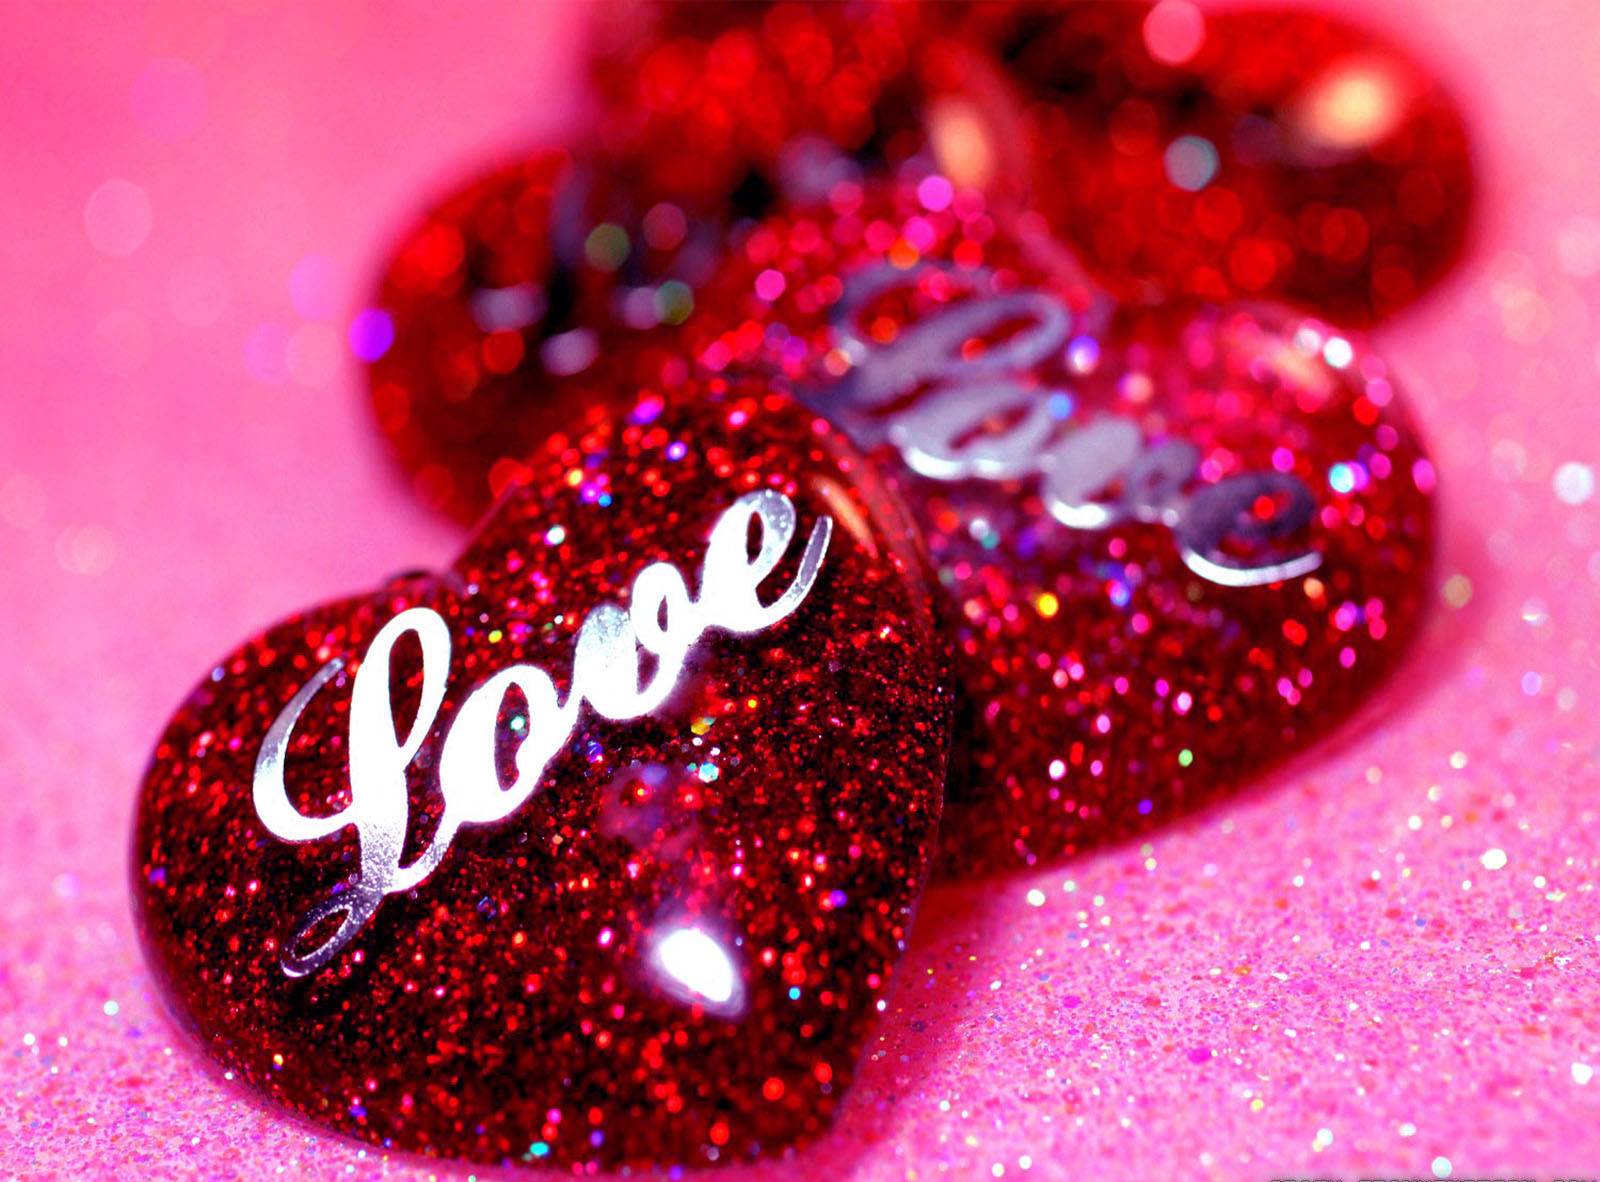 sfondi cuore carino,luccichio,rosso,rosa,cuore,san valentino